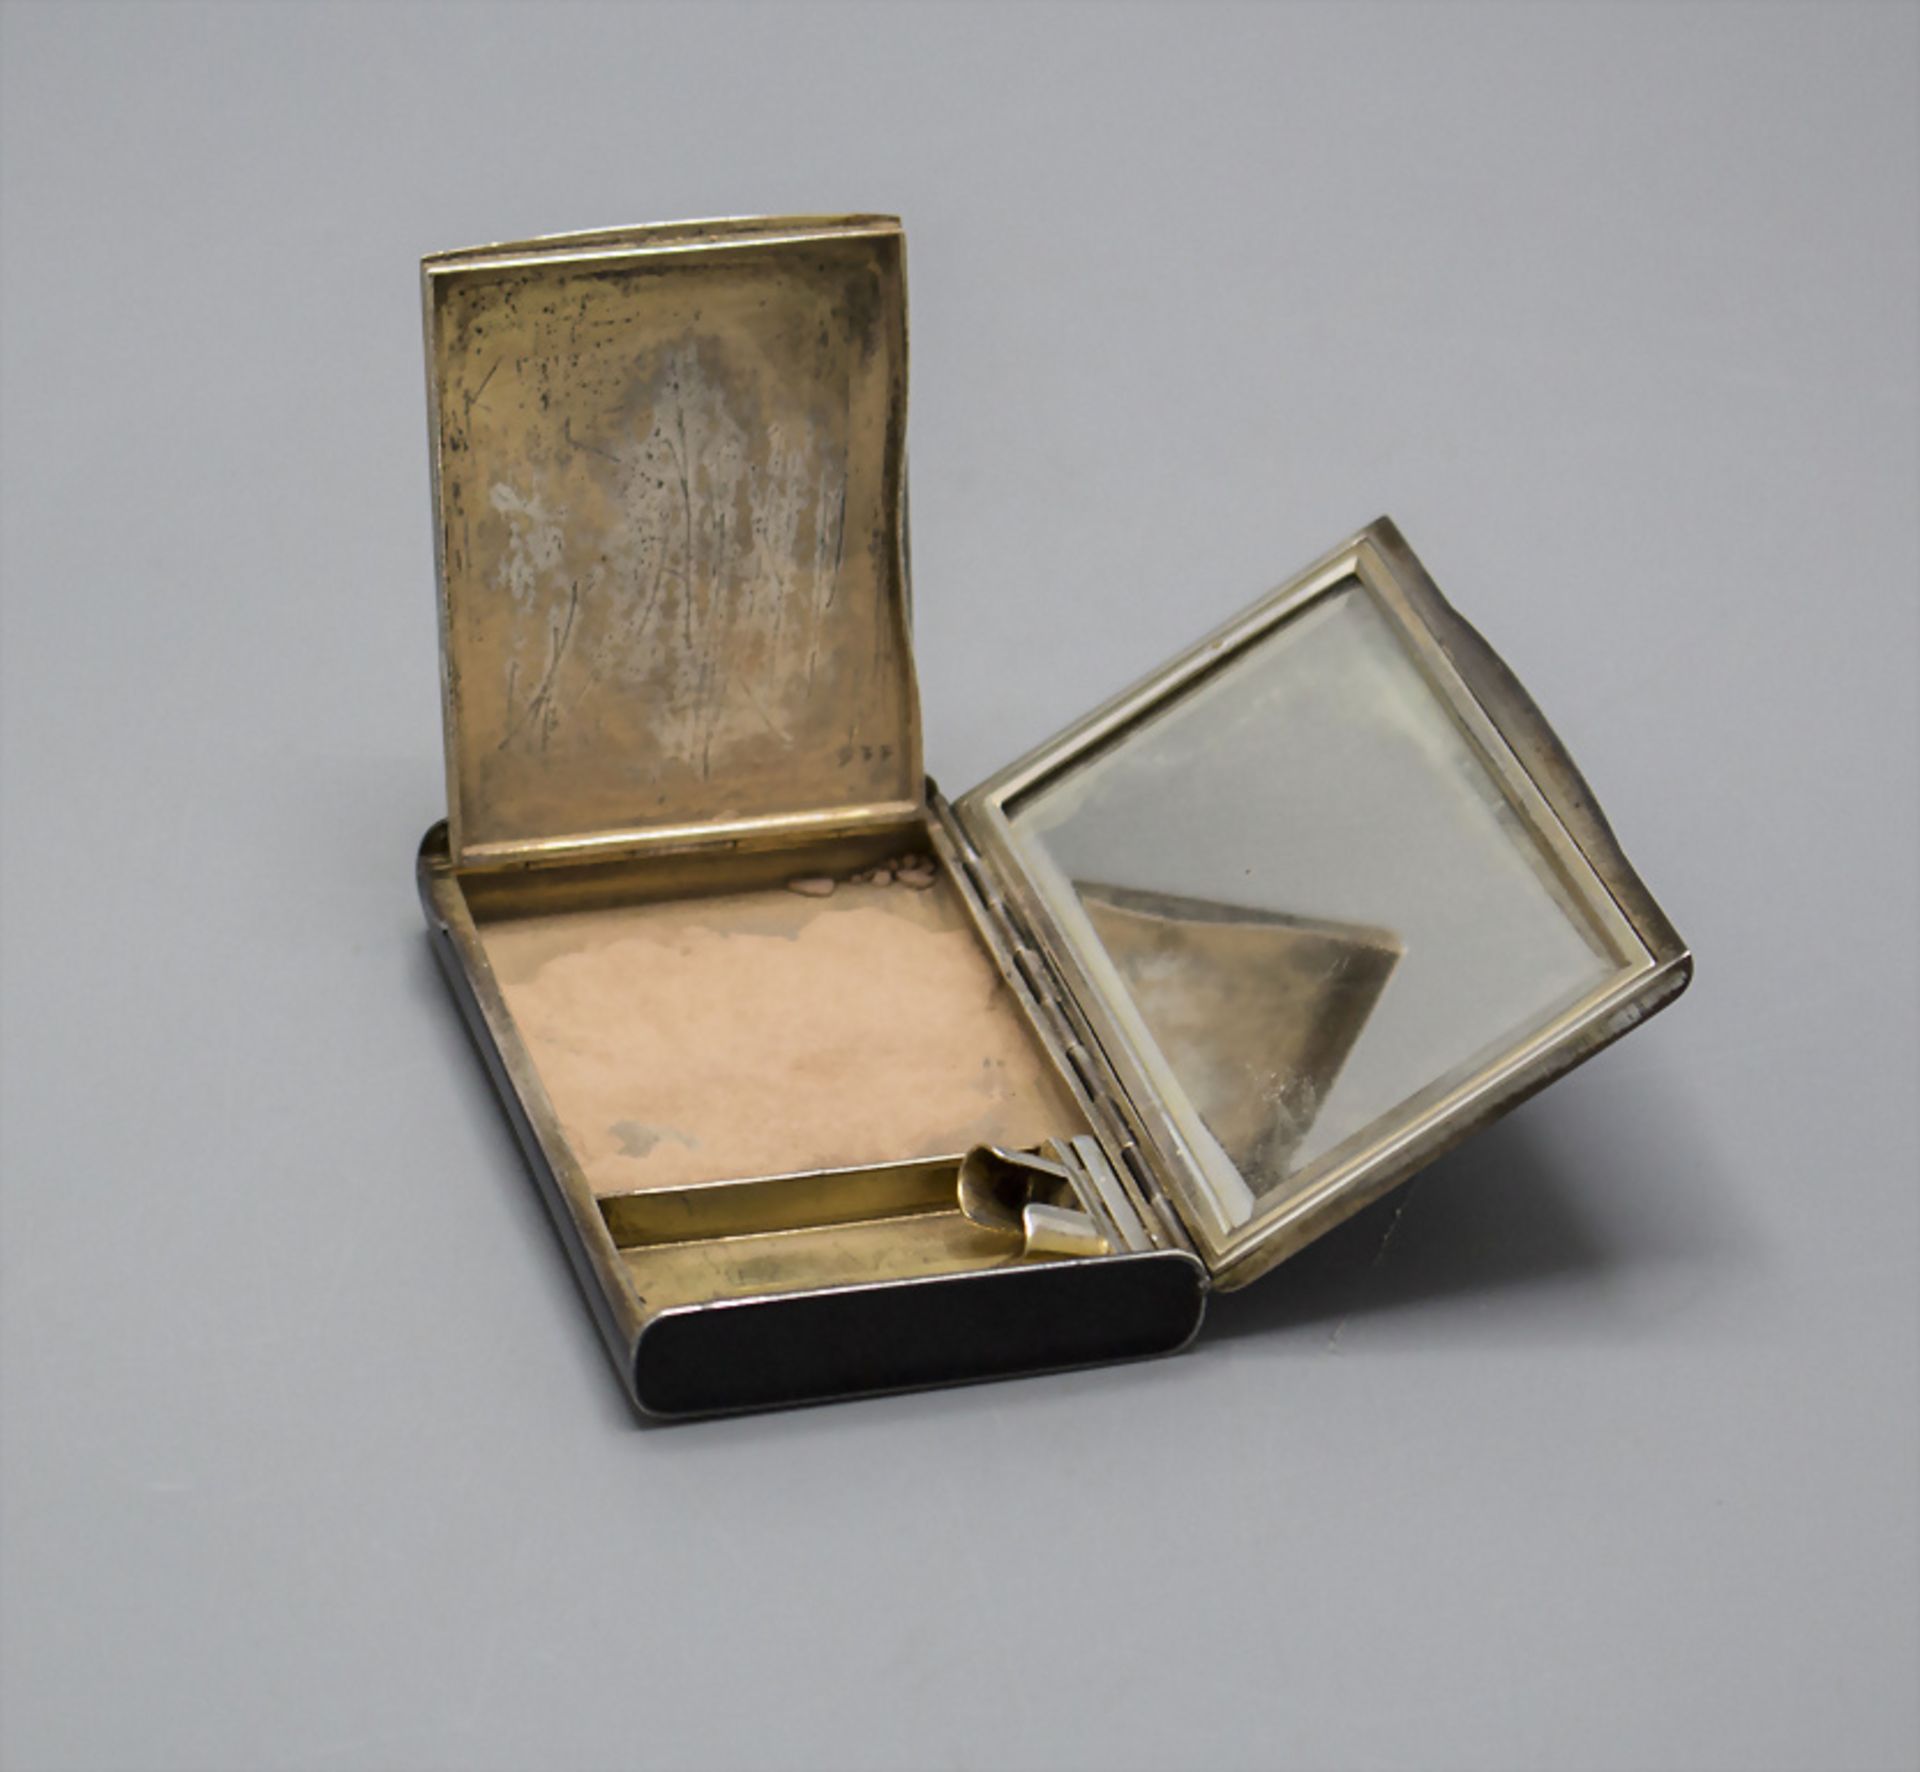 Art Déco Puderdose mit Diamanten / An Art Deco powder compact with diamonds, wohl Wien, um 1900 - Image 3 of 5